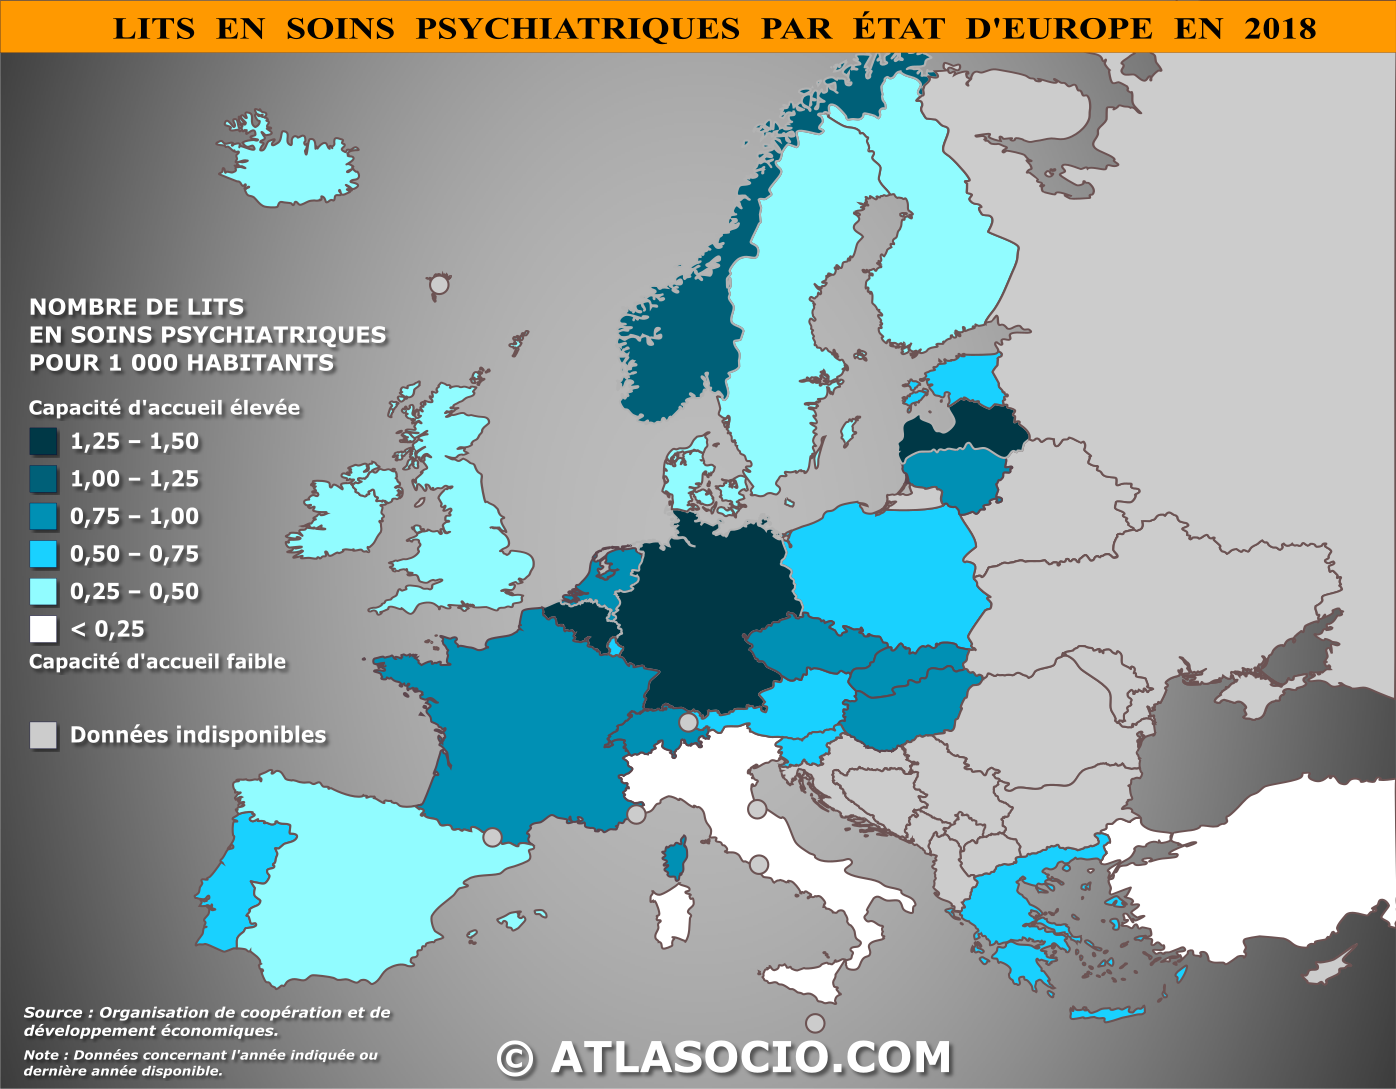 Carte d'Europe relative au nombre de lits en soins psychiatriques pour 1000 personnes par État en 2018